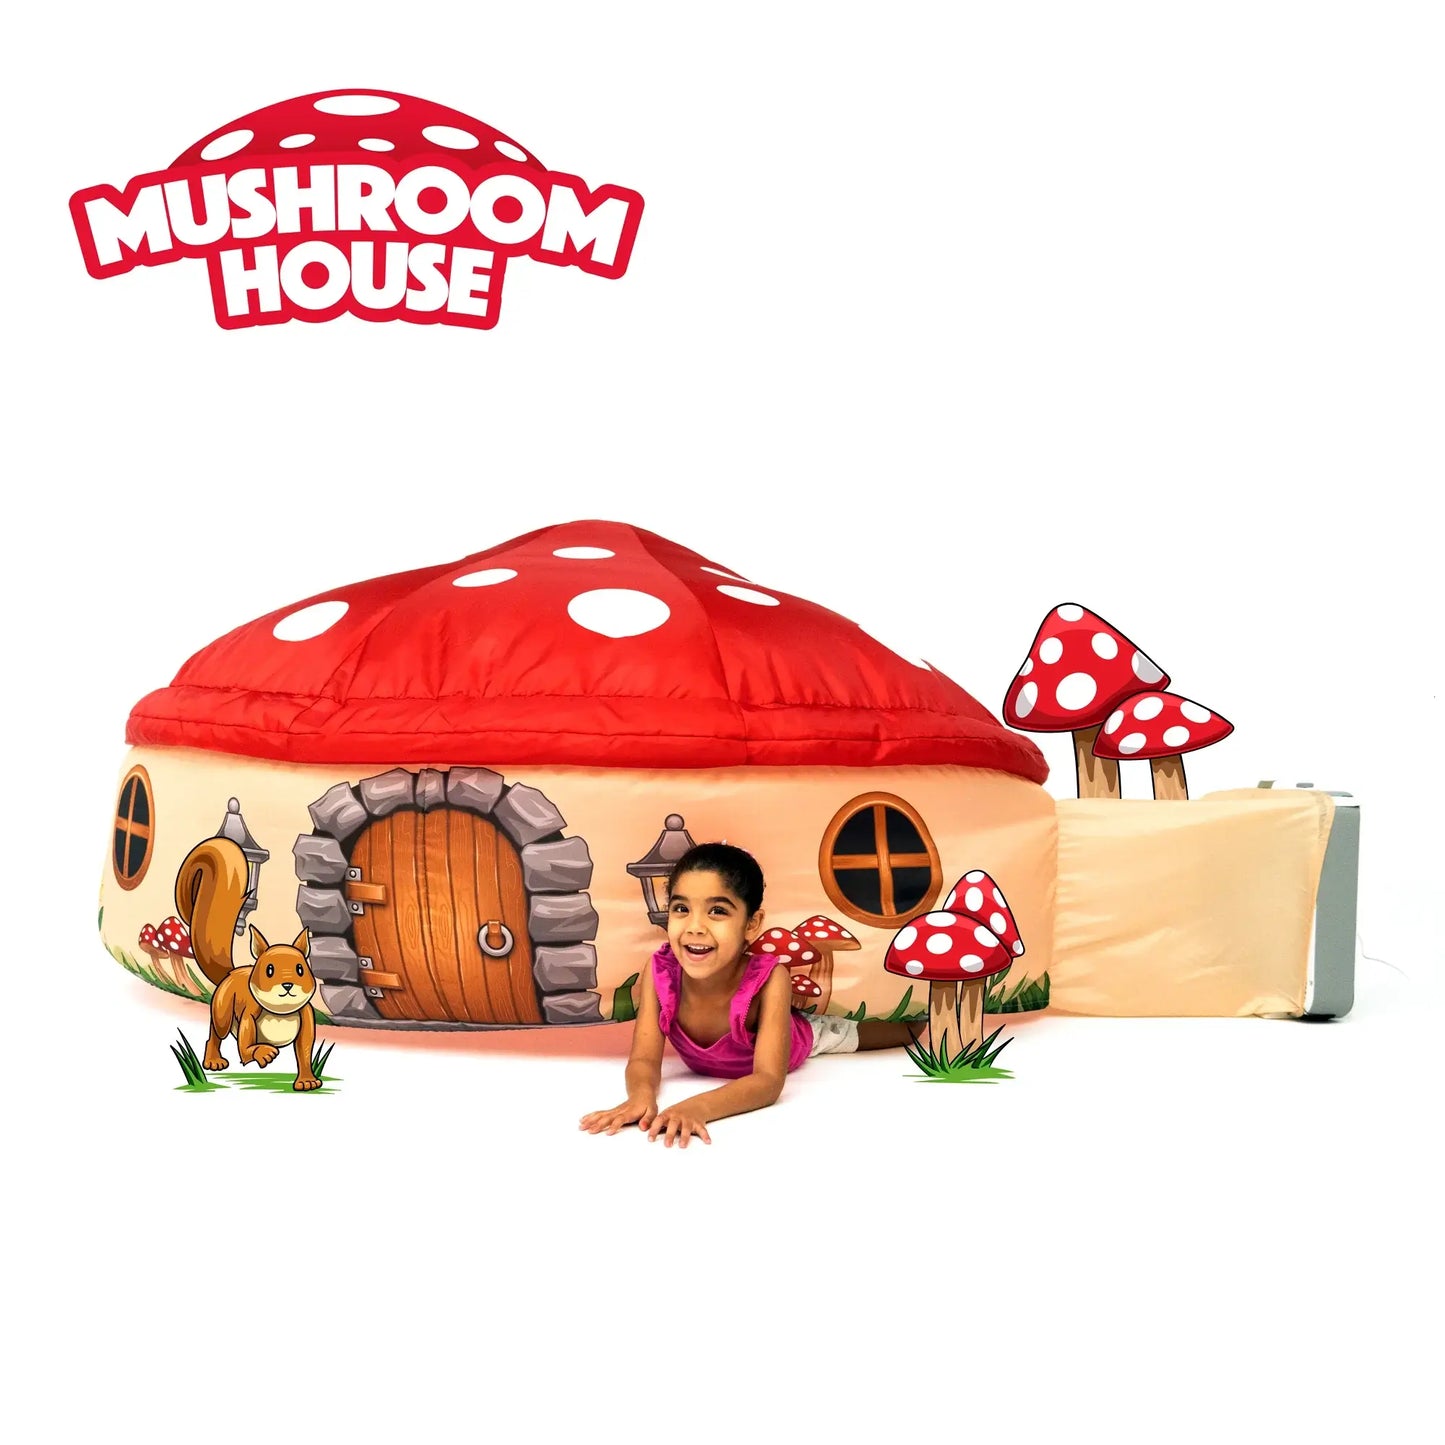 Mushroom House Airfort